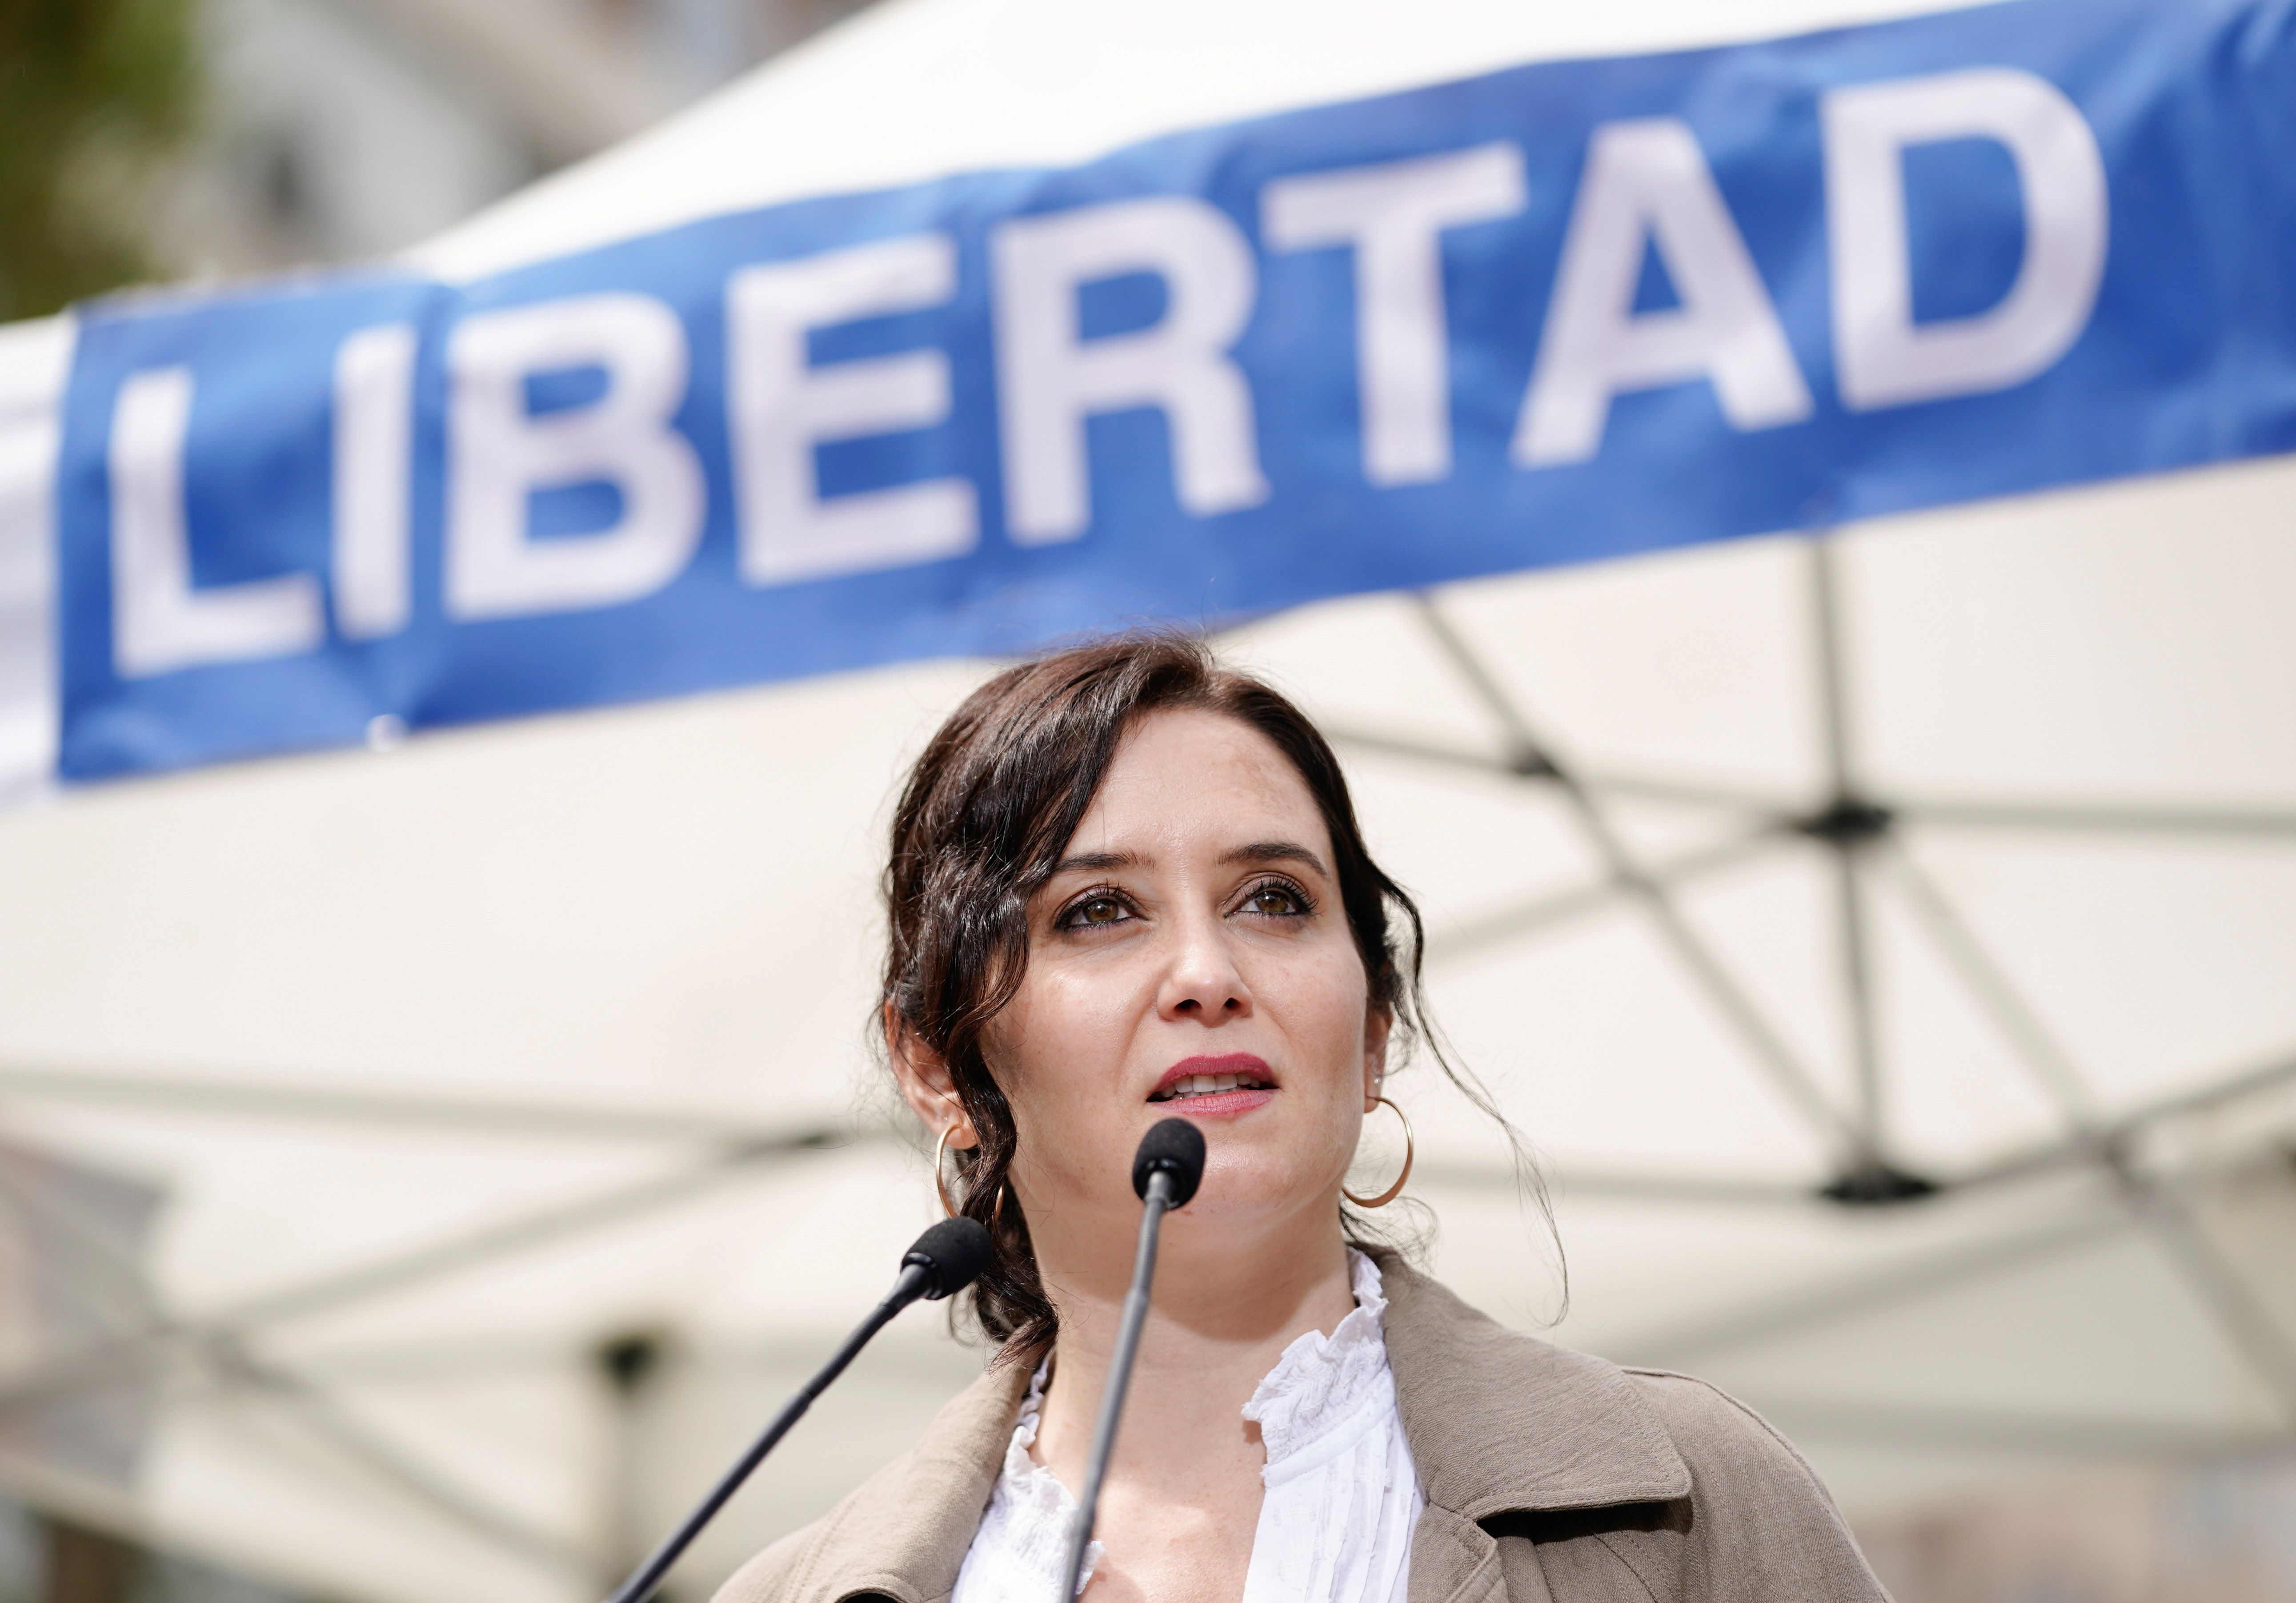 La presidenta de la Comunidad de Madrid y candidata a la reelección, Isabel Díaz Ayuso.